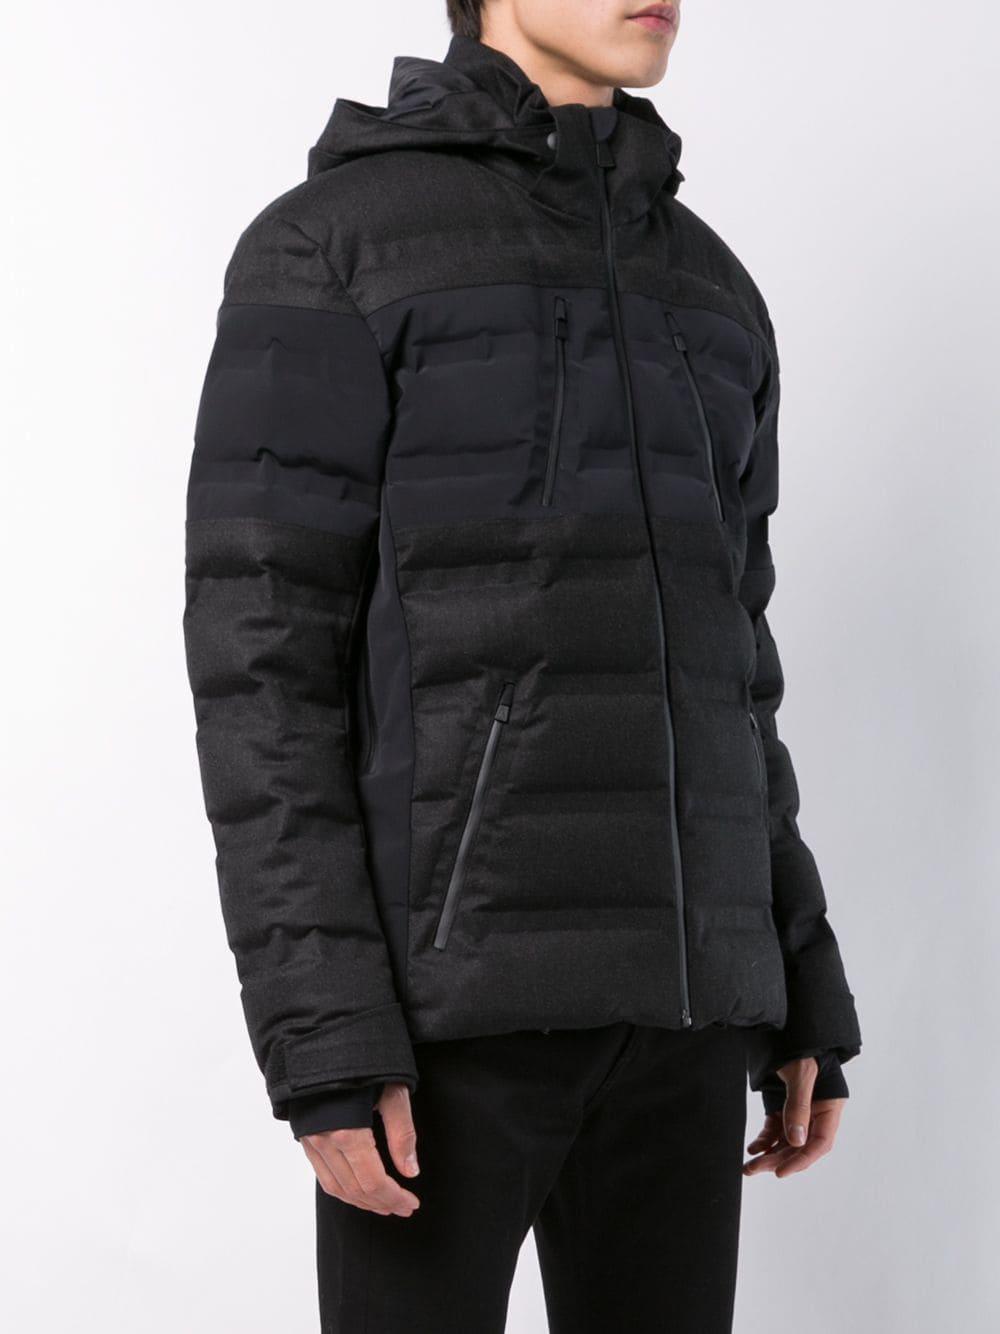 Aztech Mountain Wool Nuke Padded Jacket in Black for Men - Lyst